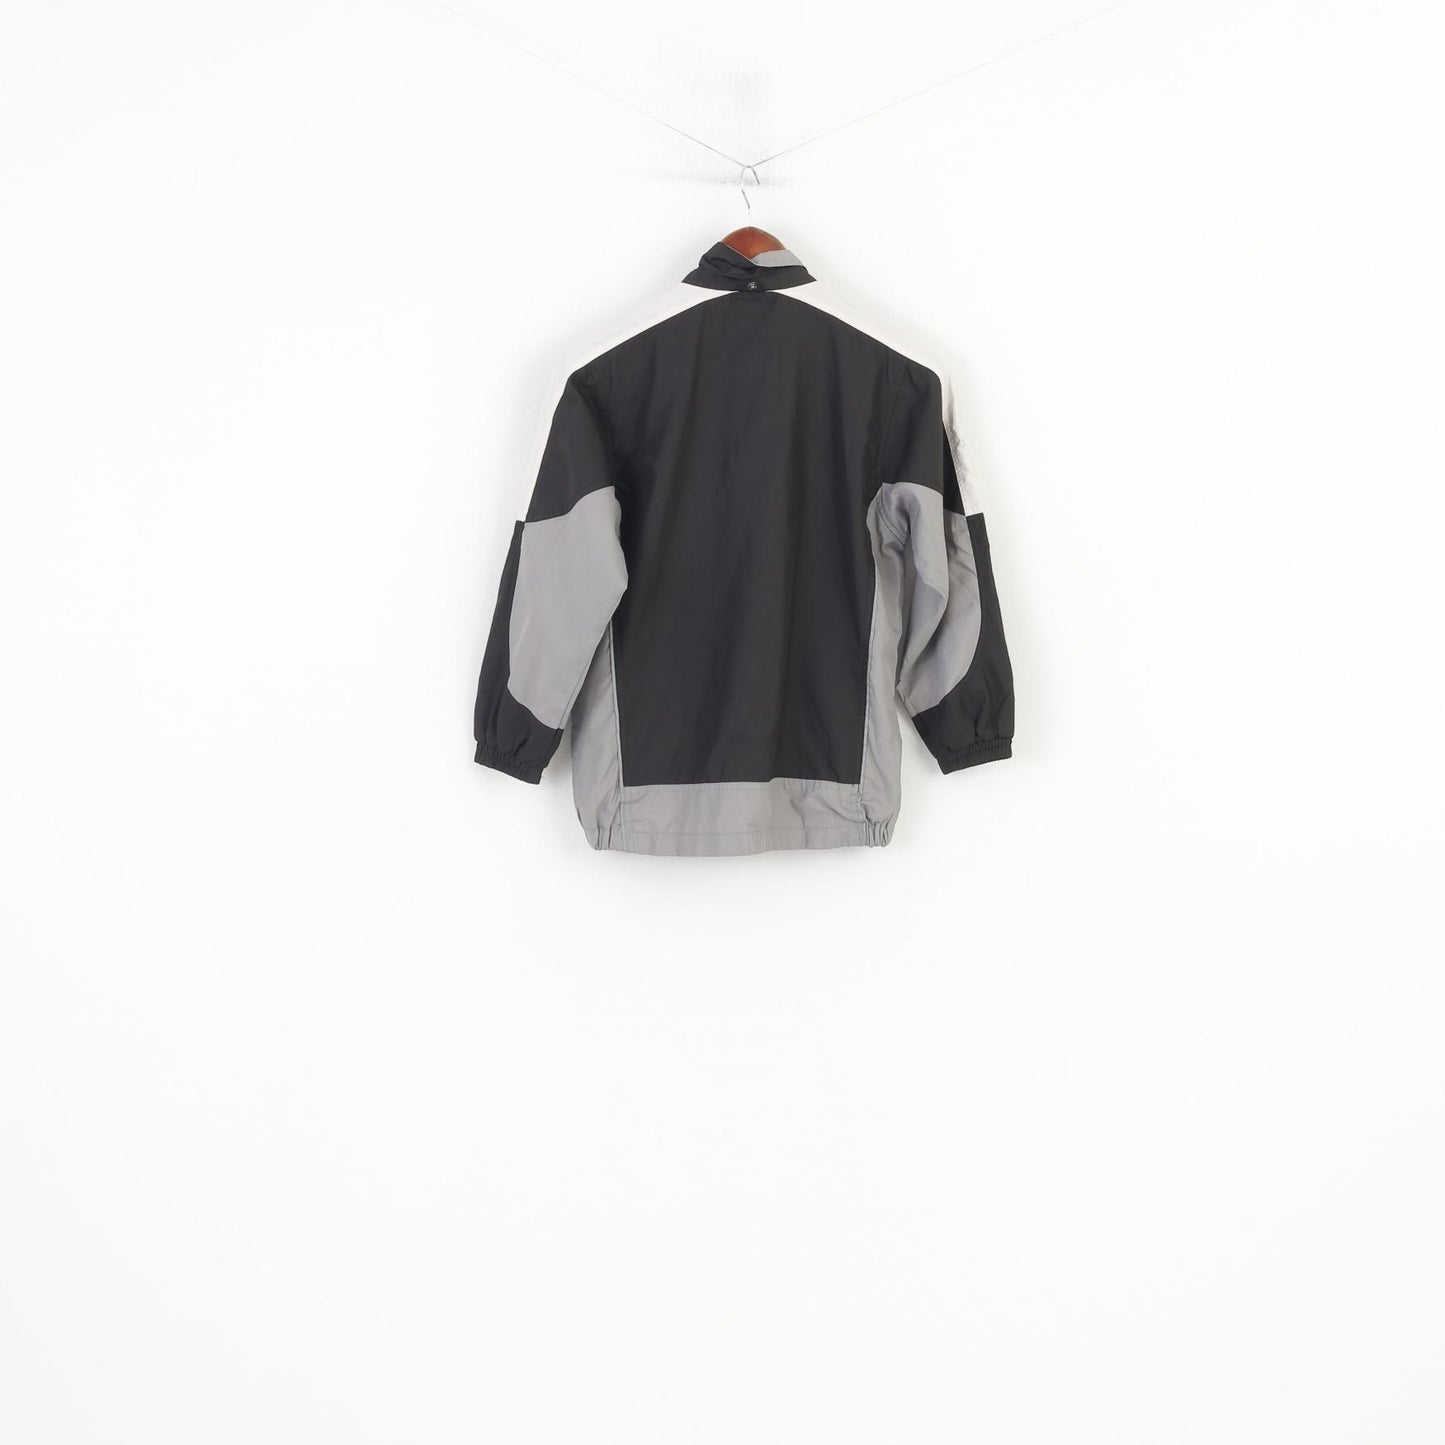 Giacca Umbro Boys 140 con cerniera intera Sport nero grigio Outwear Top vintage